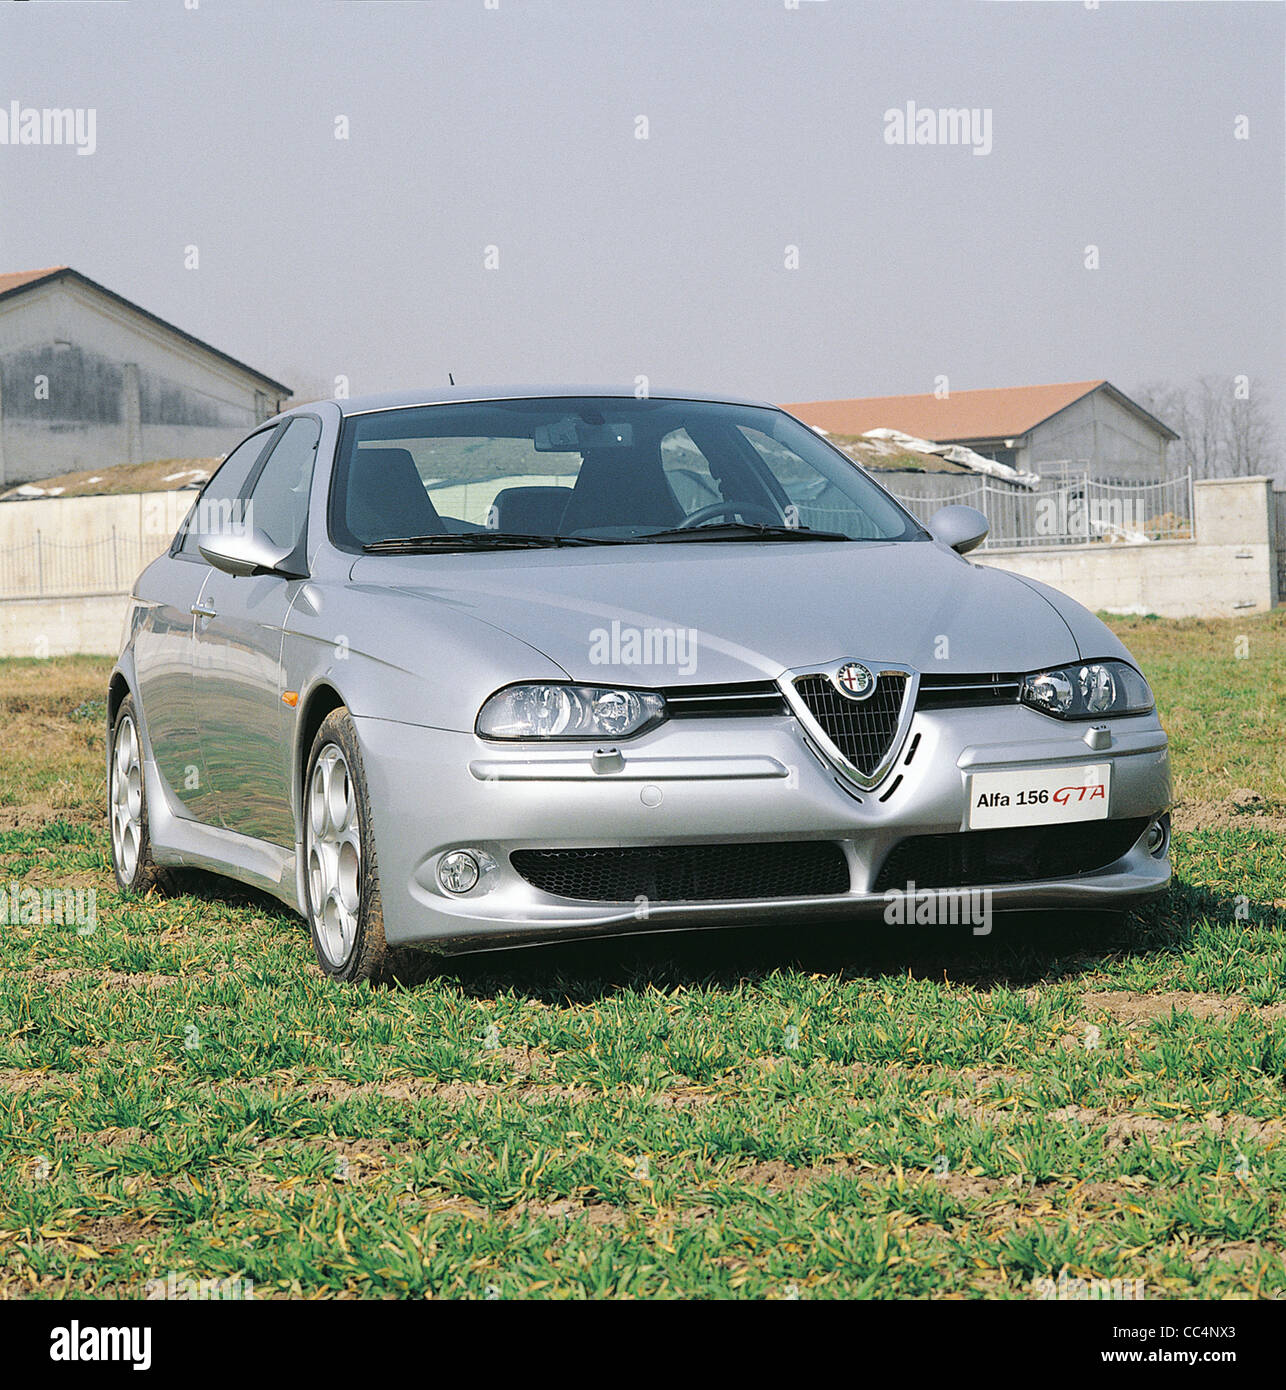 Cars 21St Century Italy. Alfa Romeo Gta. Special Series. Year 2002 Stock  Photo - Alamy